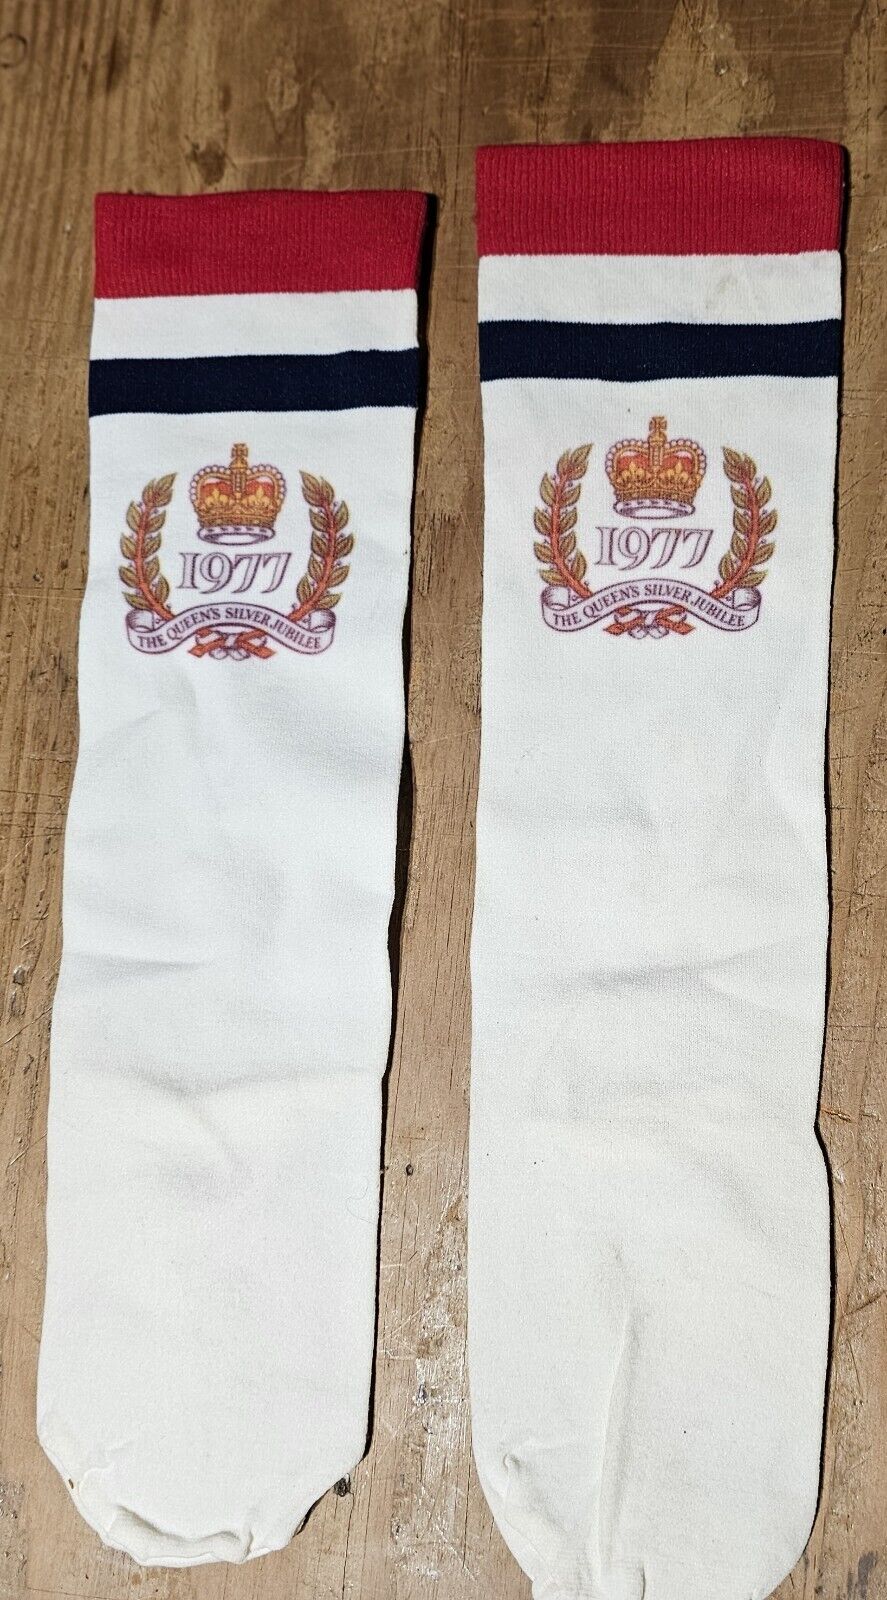 The Queen's Silver Jubilee 1977 Socks